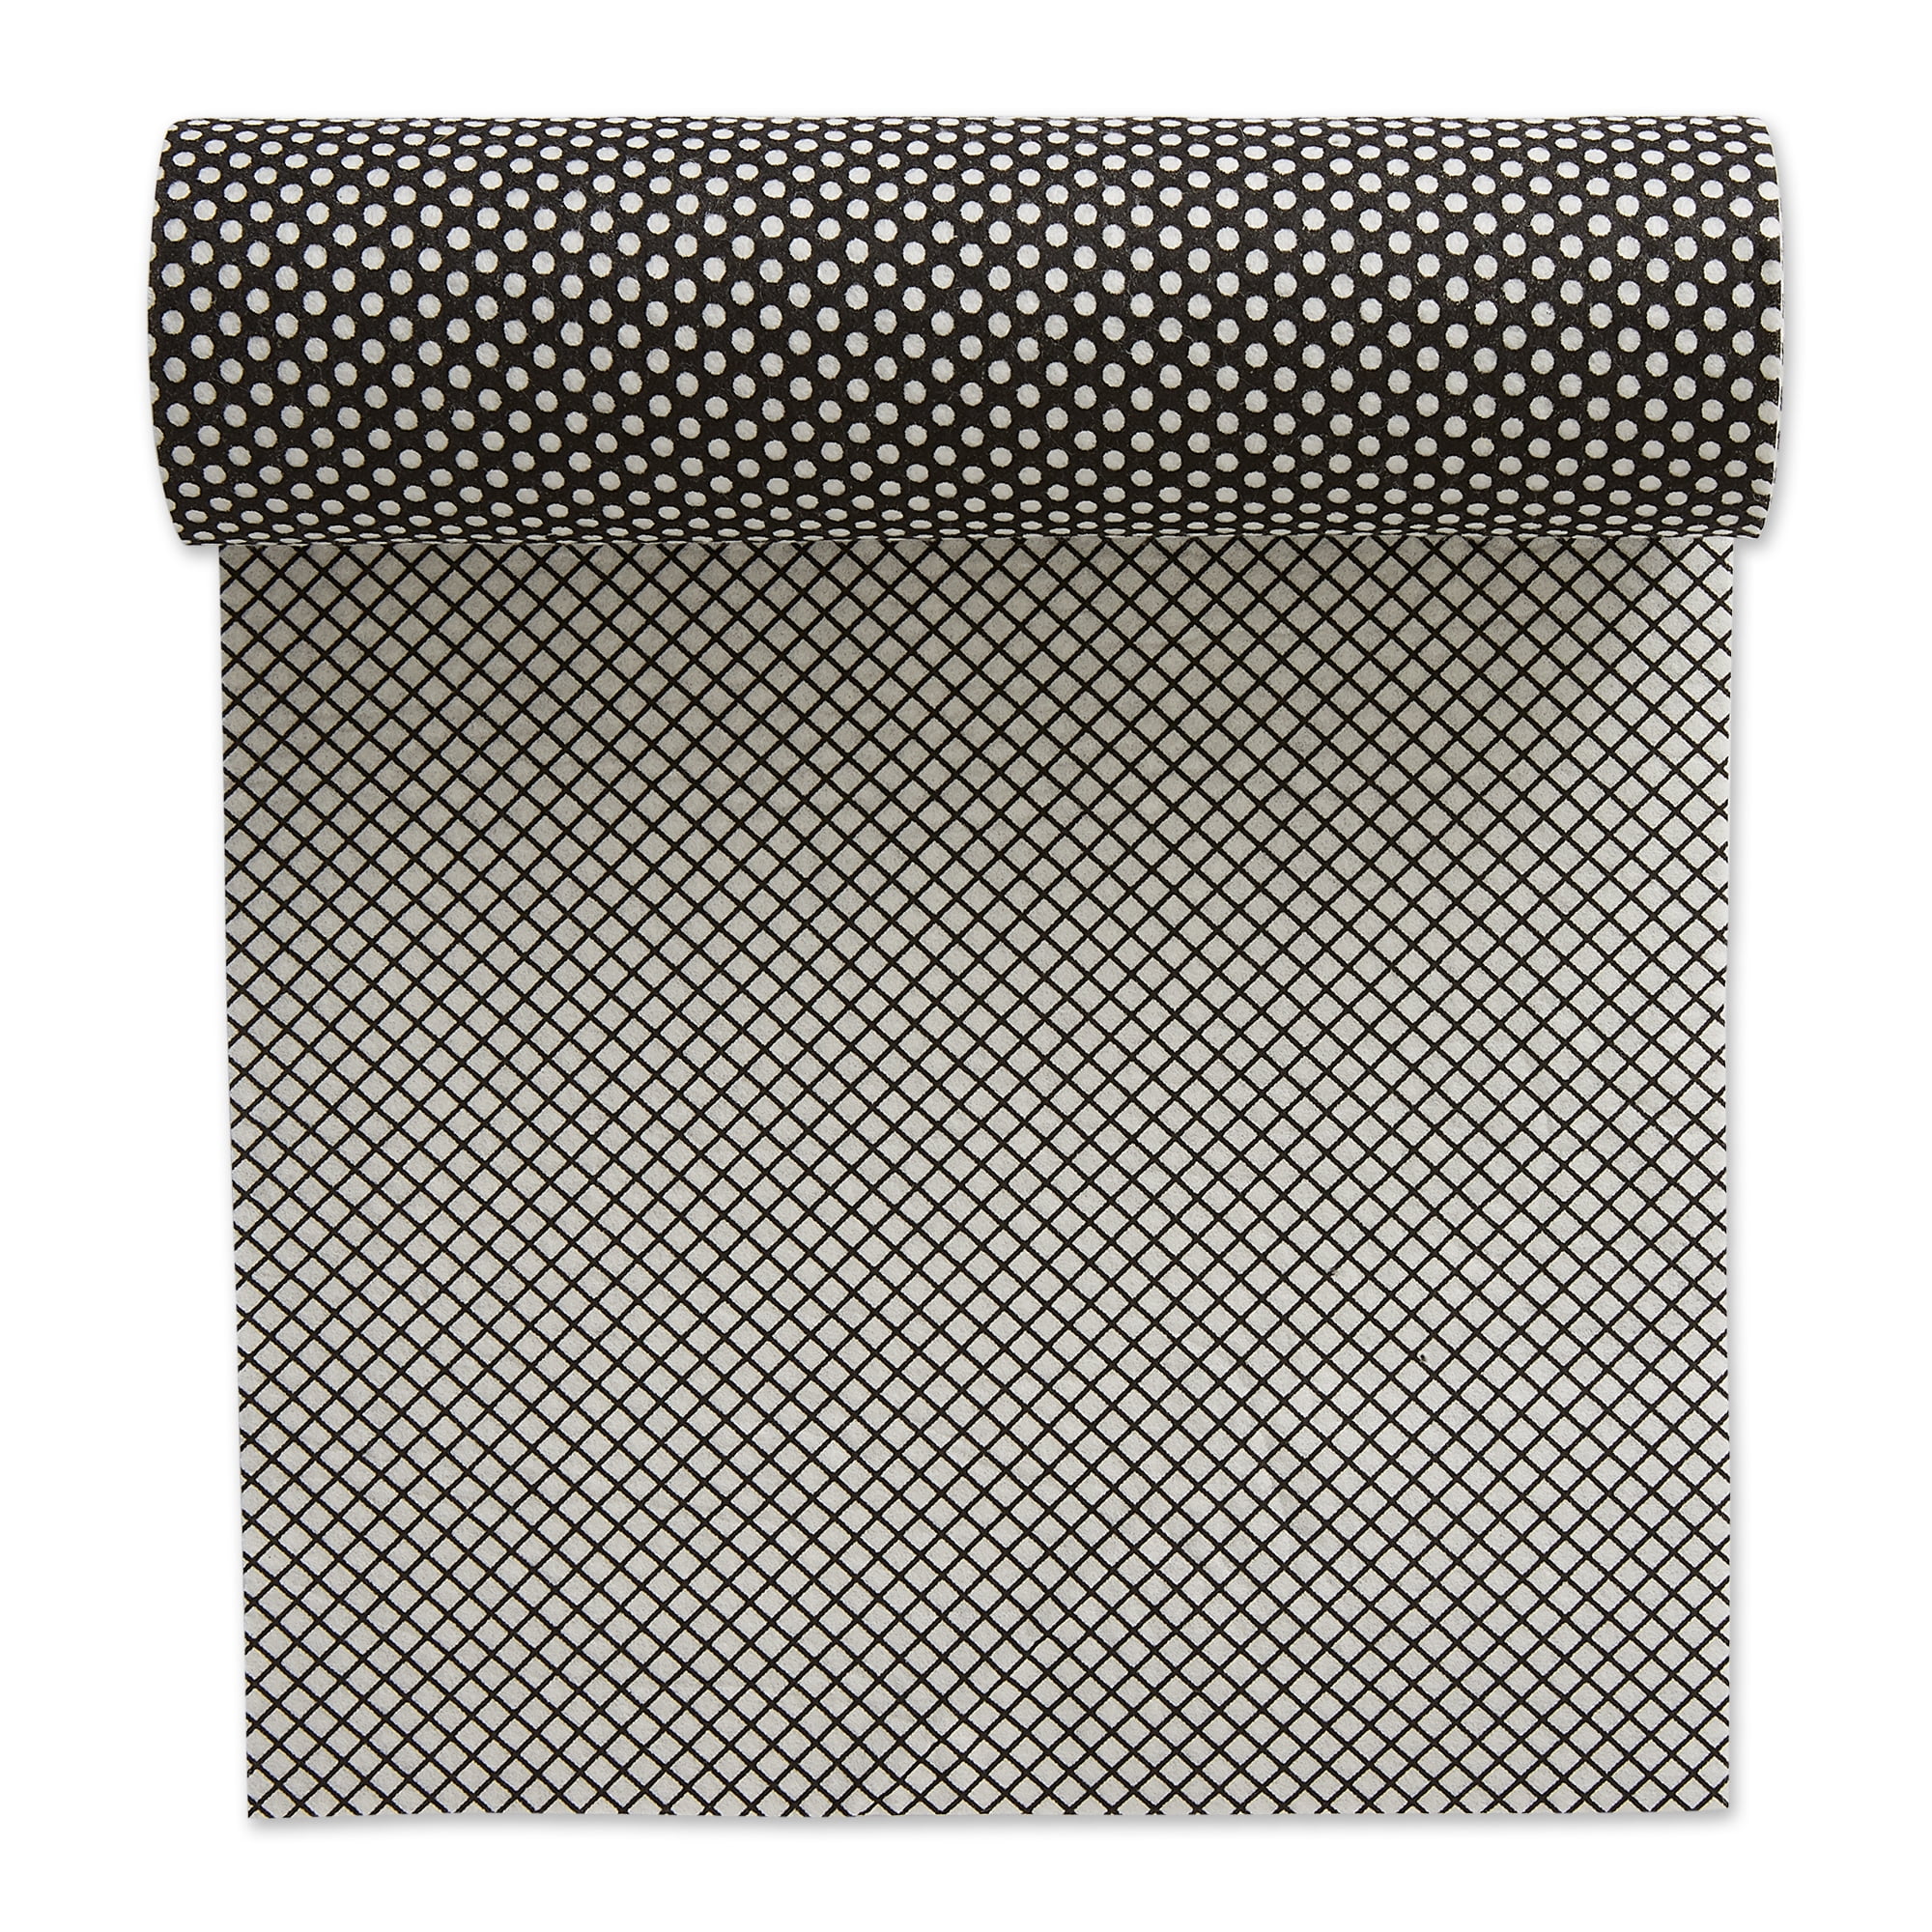 Picture of Design Imports CAMZ32923 Black Dots Shelf Liner - Set of 2